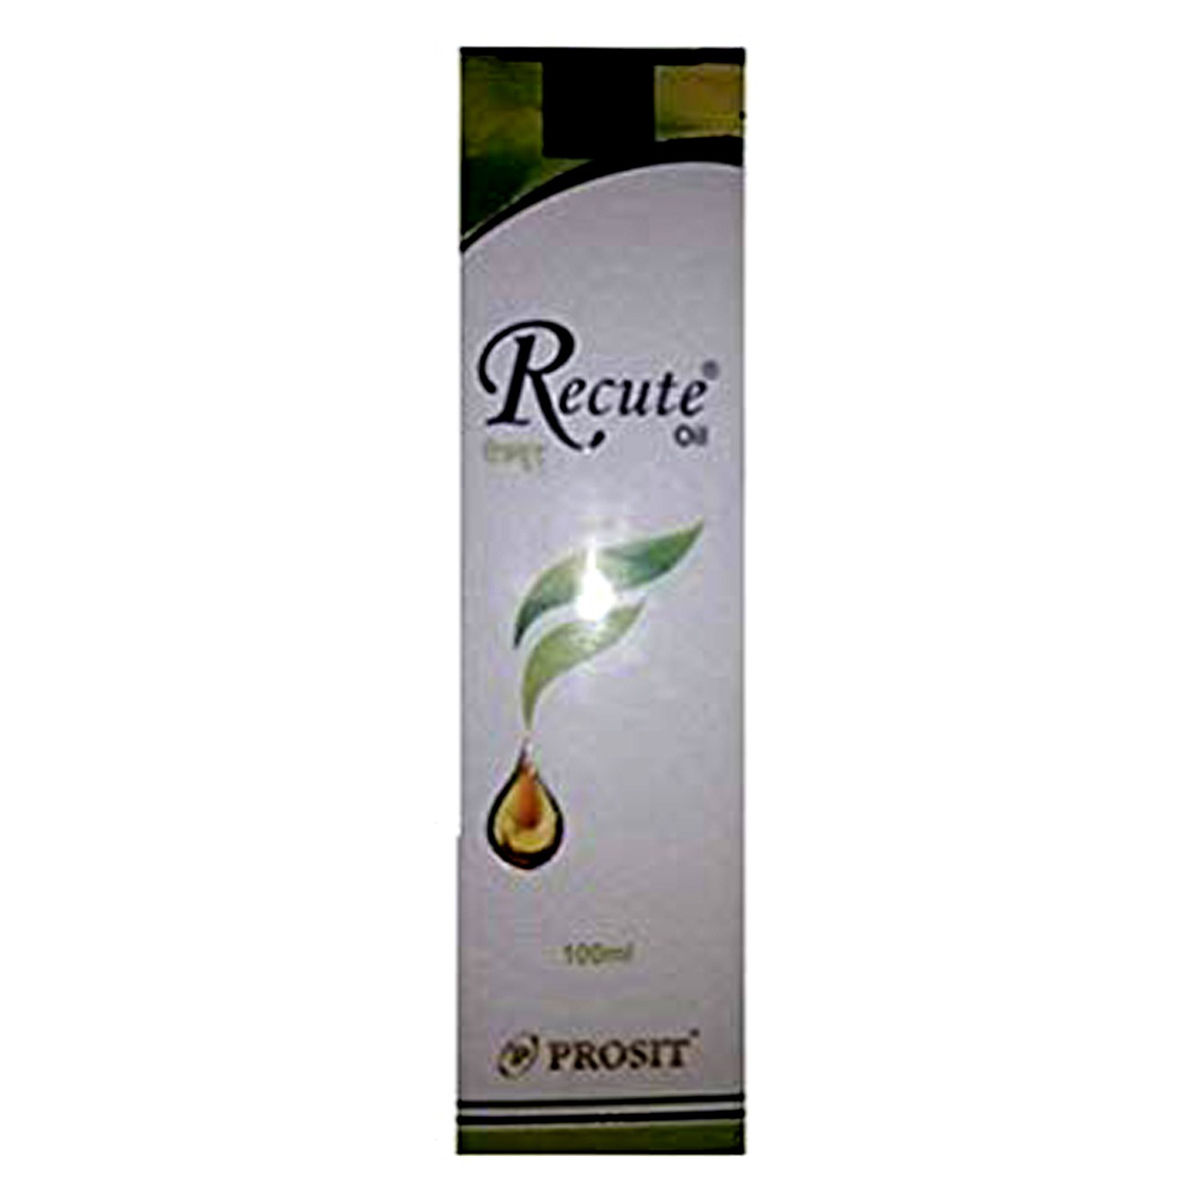 Buy Recute Hair Oil, 100 ml Online